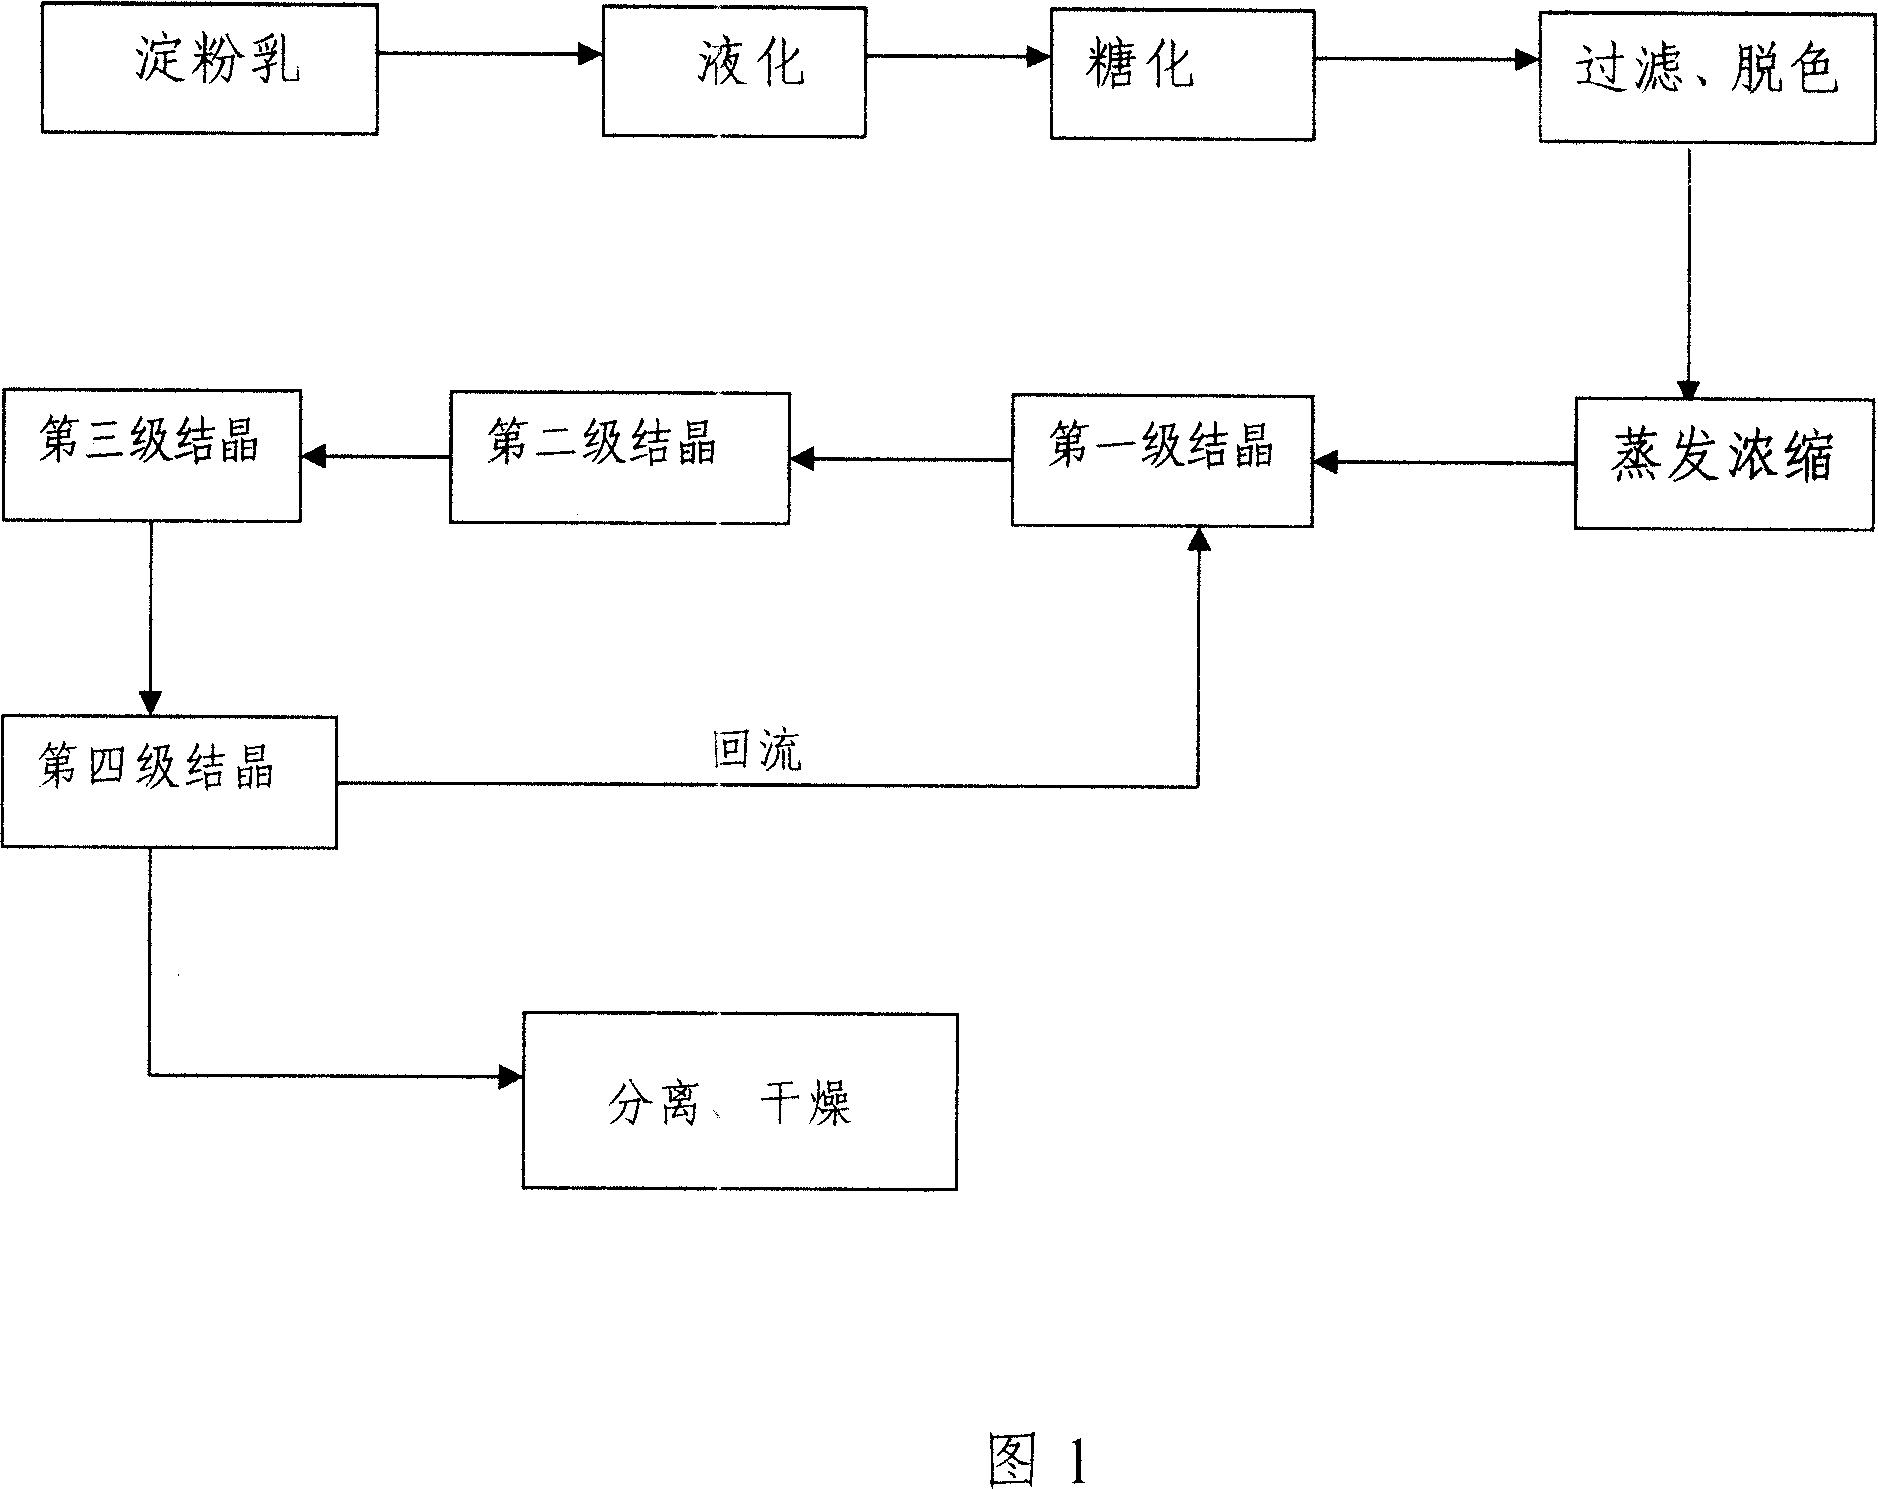 Horizontal continuous crystallization method adopting return current technique